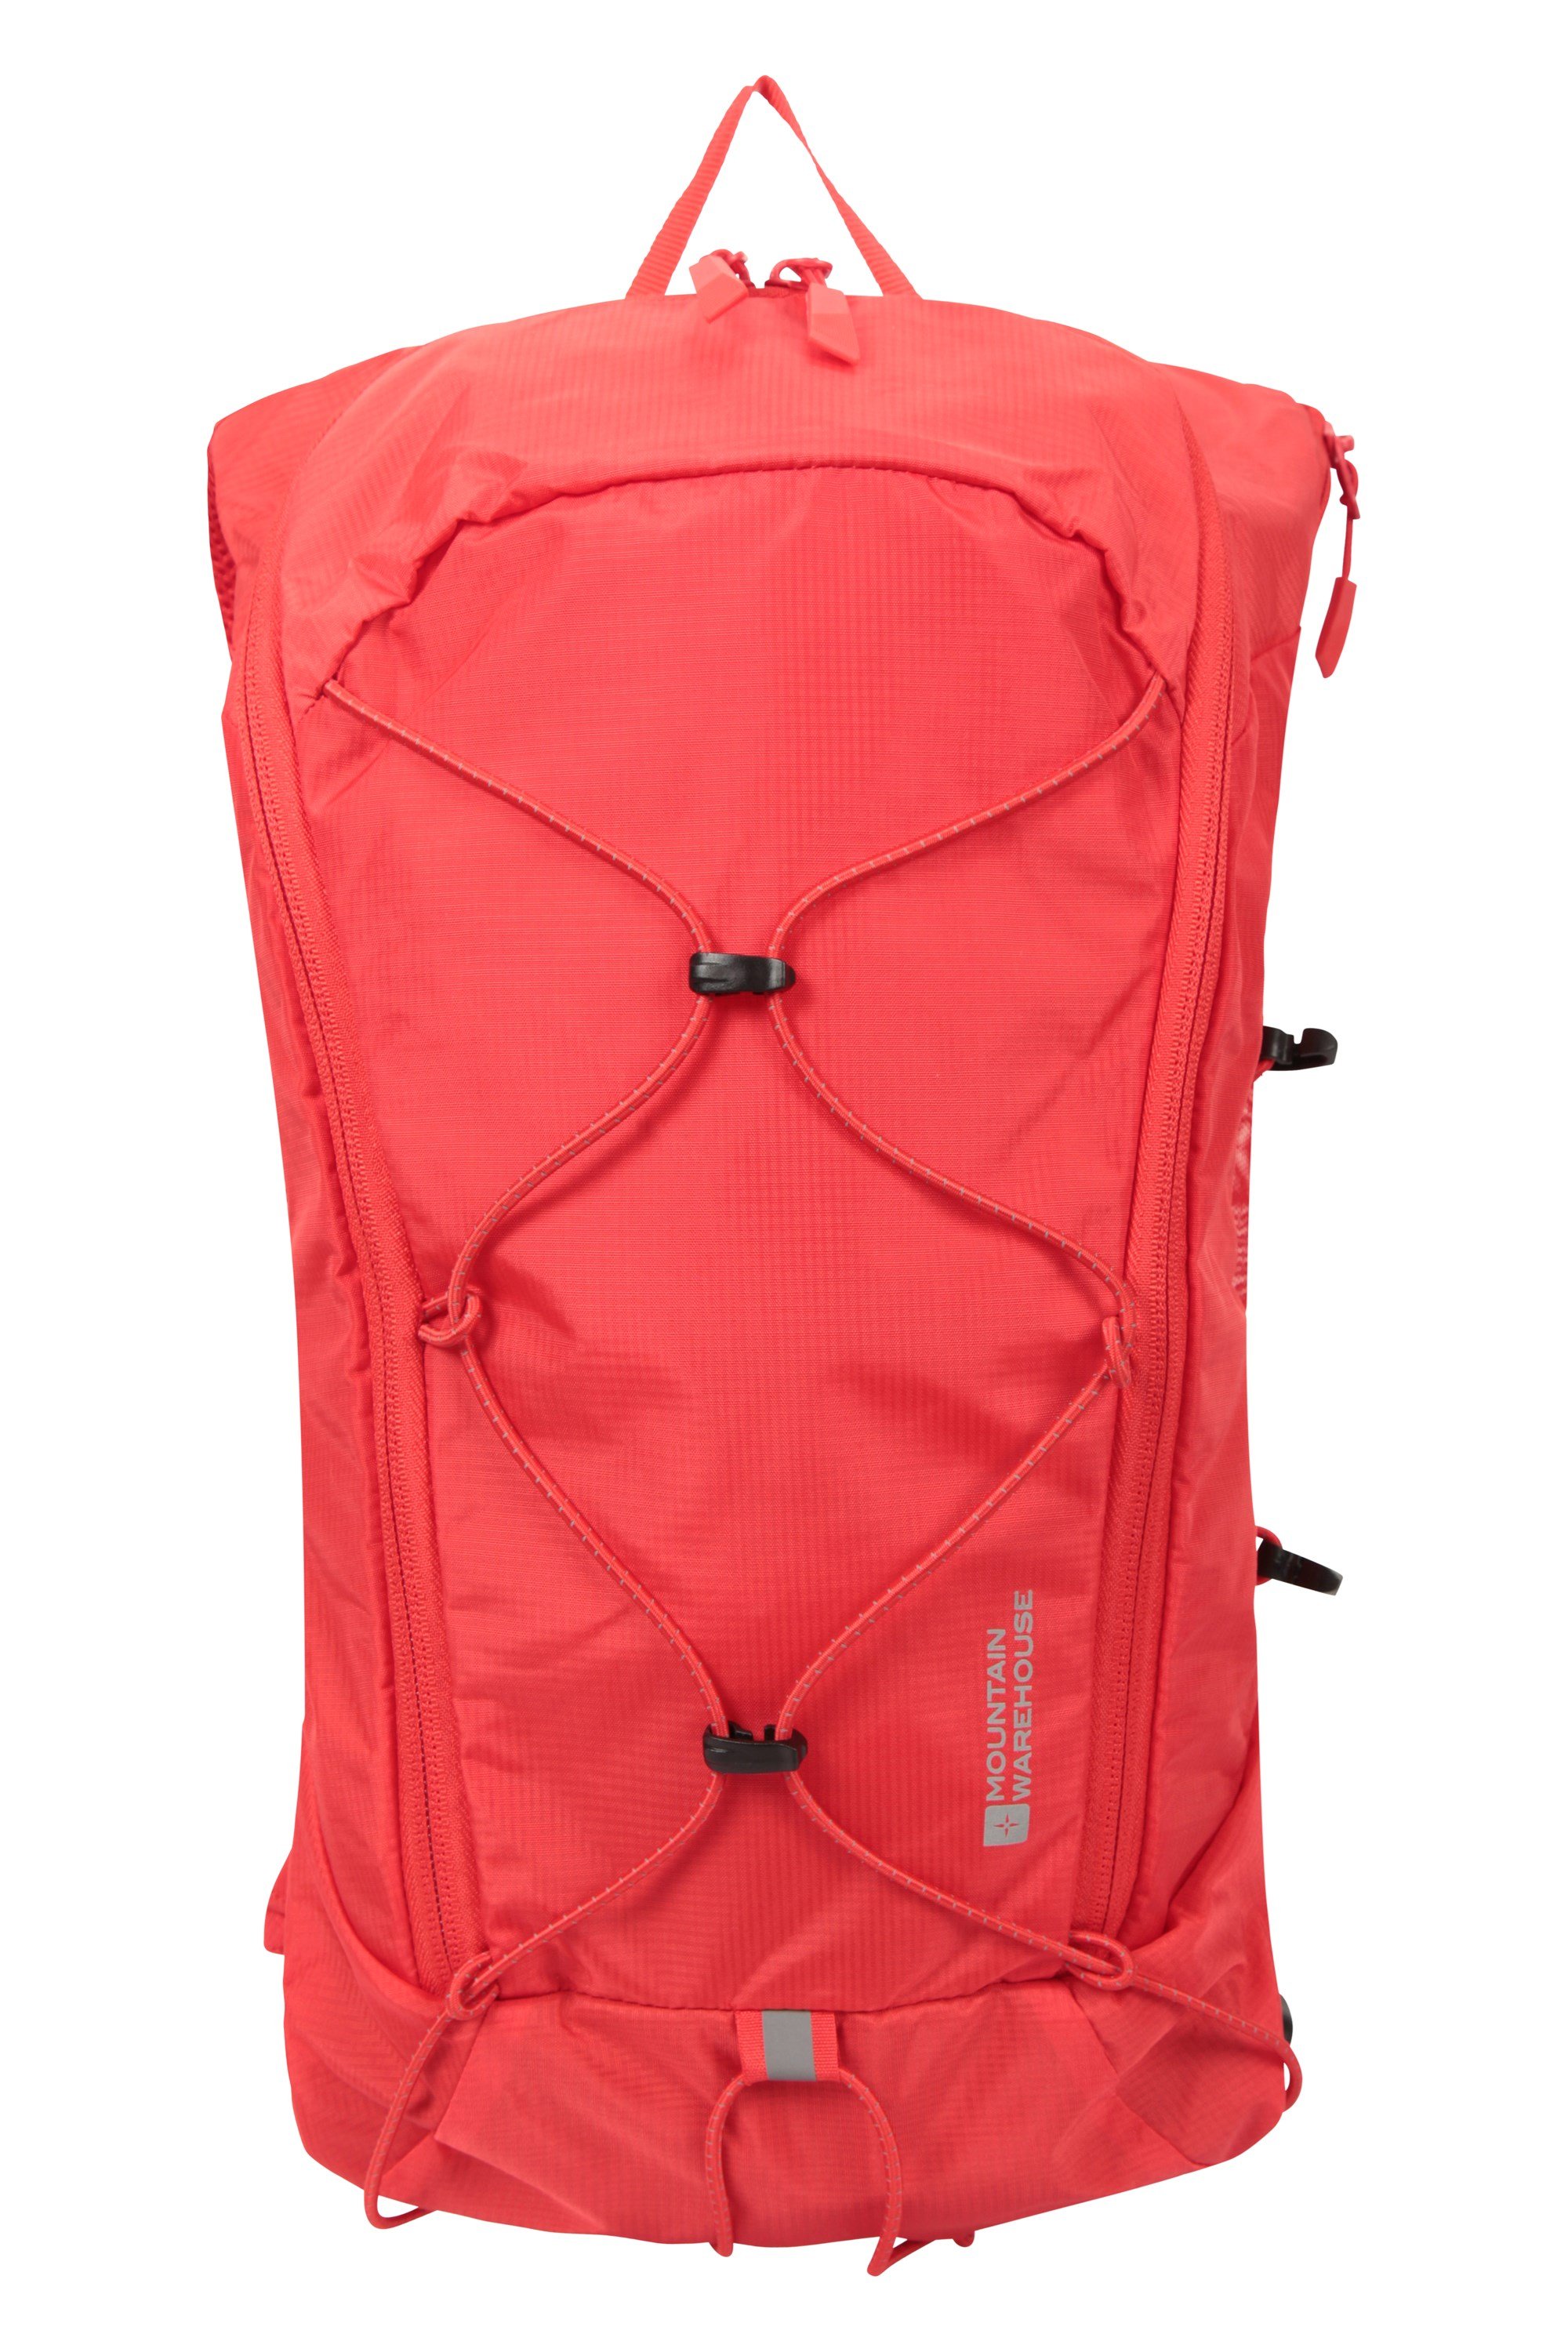 Plecak dla biegaczy Hydro 2 - Red